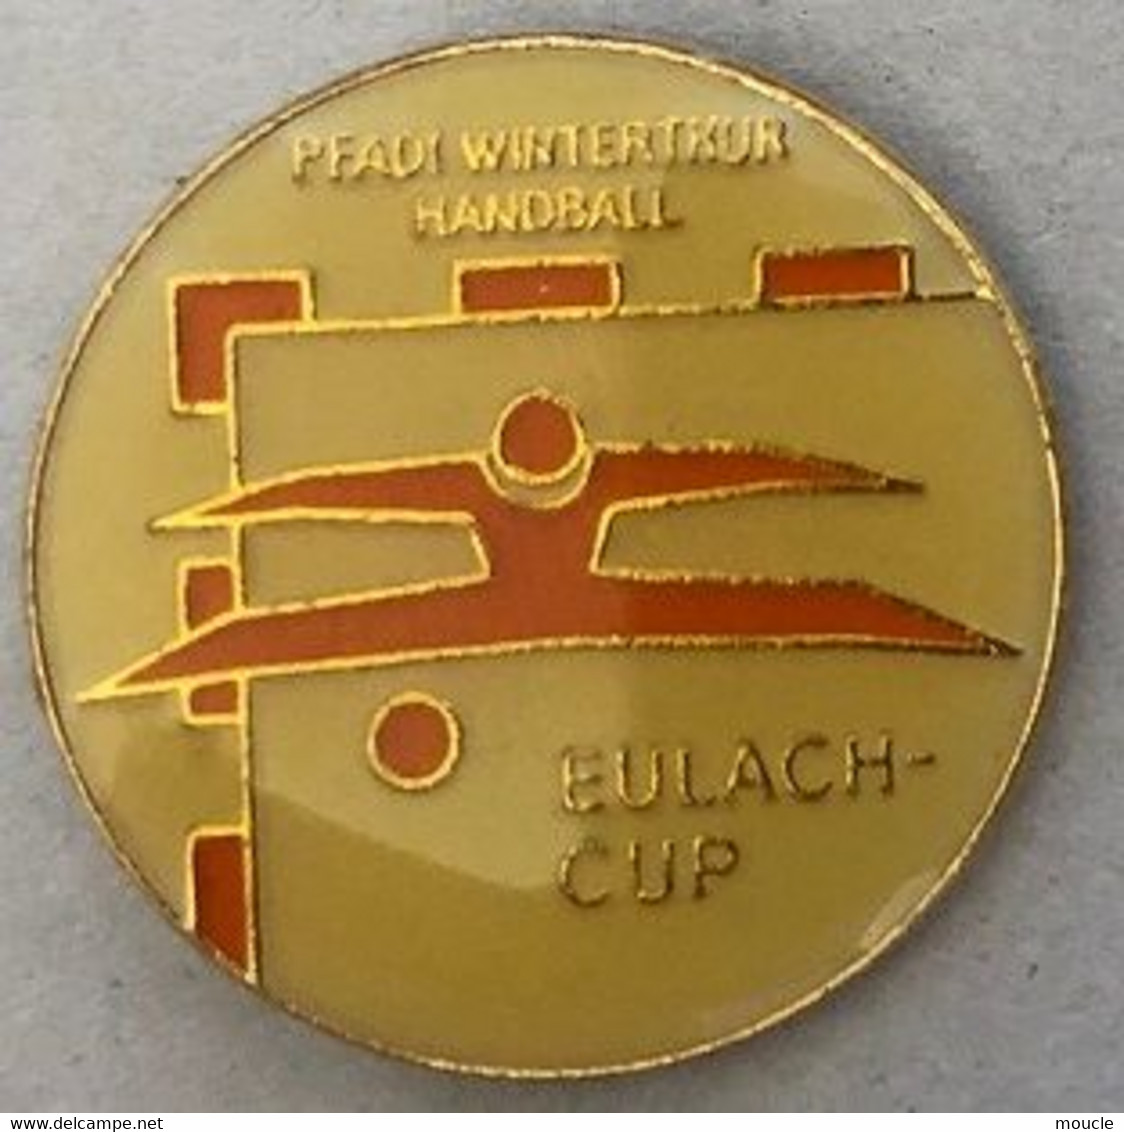 PFADI WINTERTHUR HANDBALL - WINTERTHOUR - CANTON DE ZURICH - SUISSE - SCHWEIZ - SWITZERLAND - EULACH CUP -  (27) - Pallamano